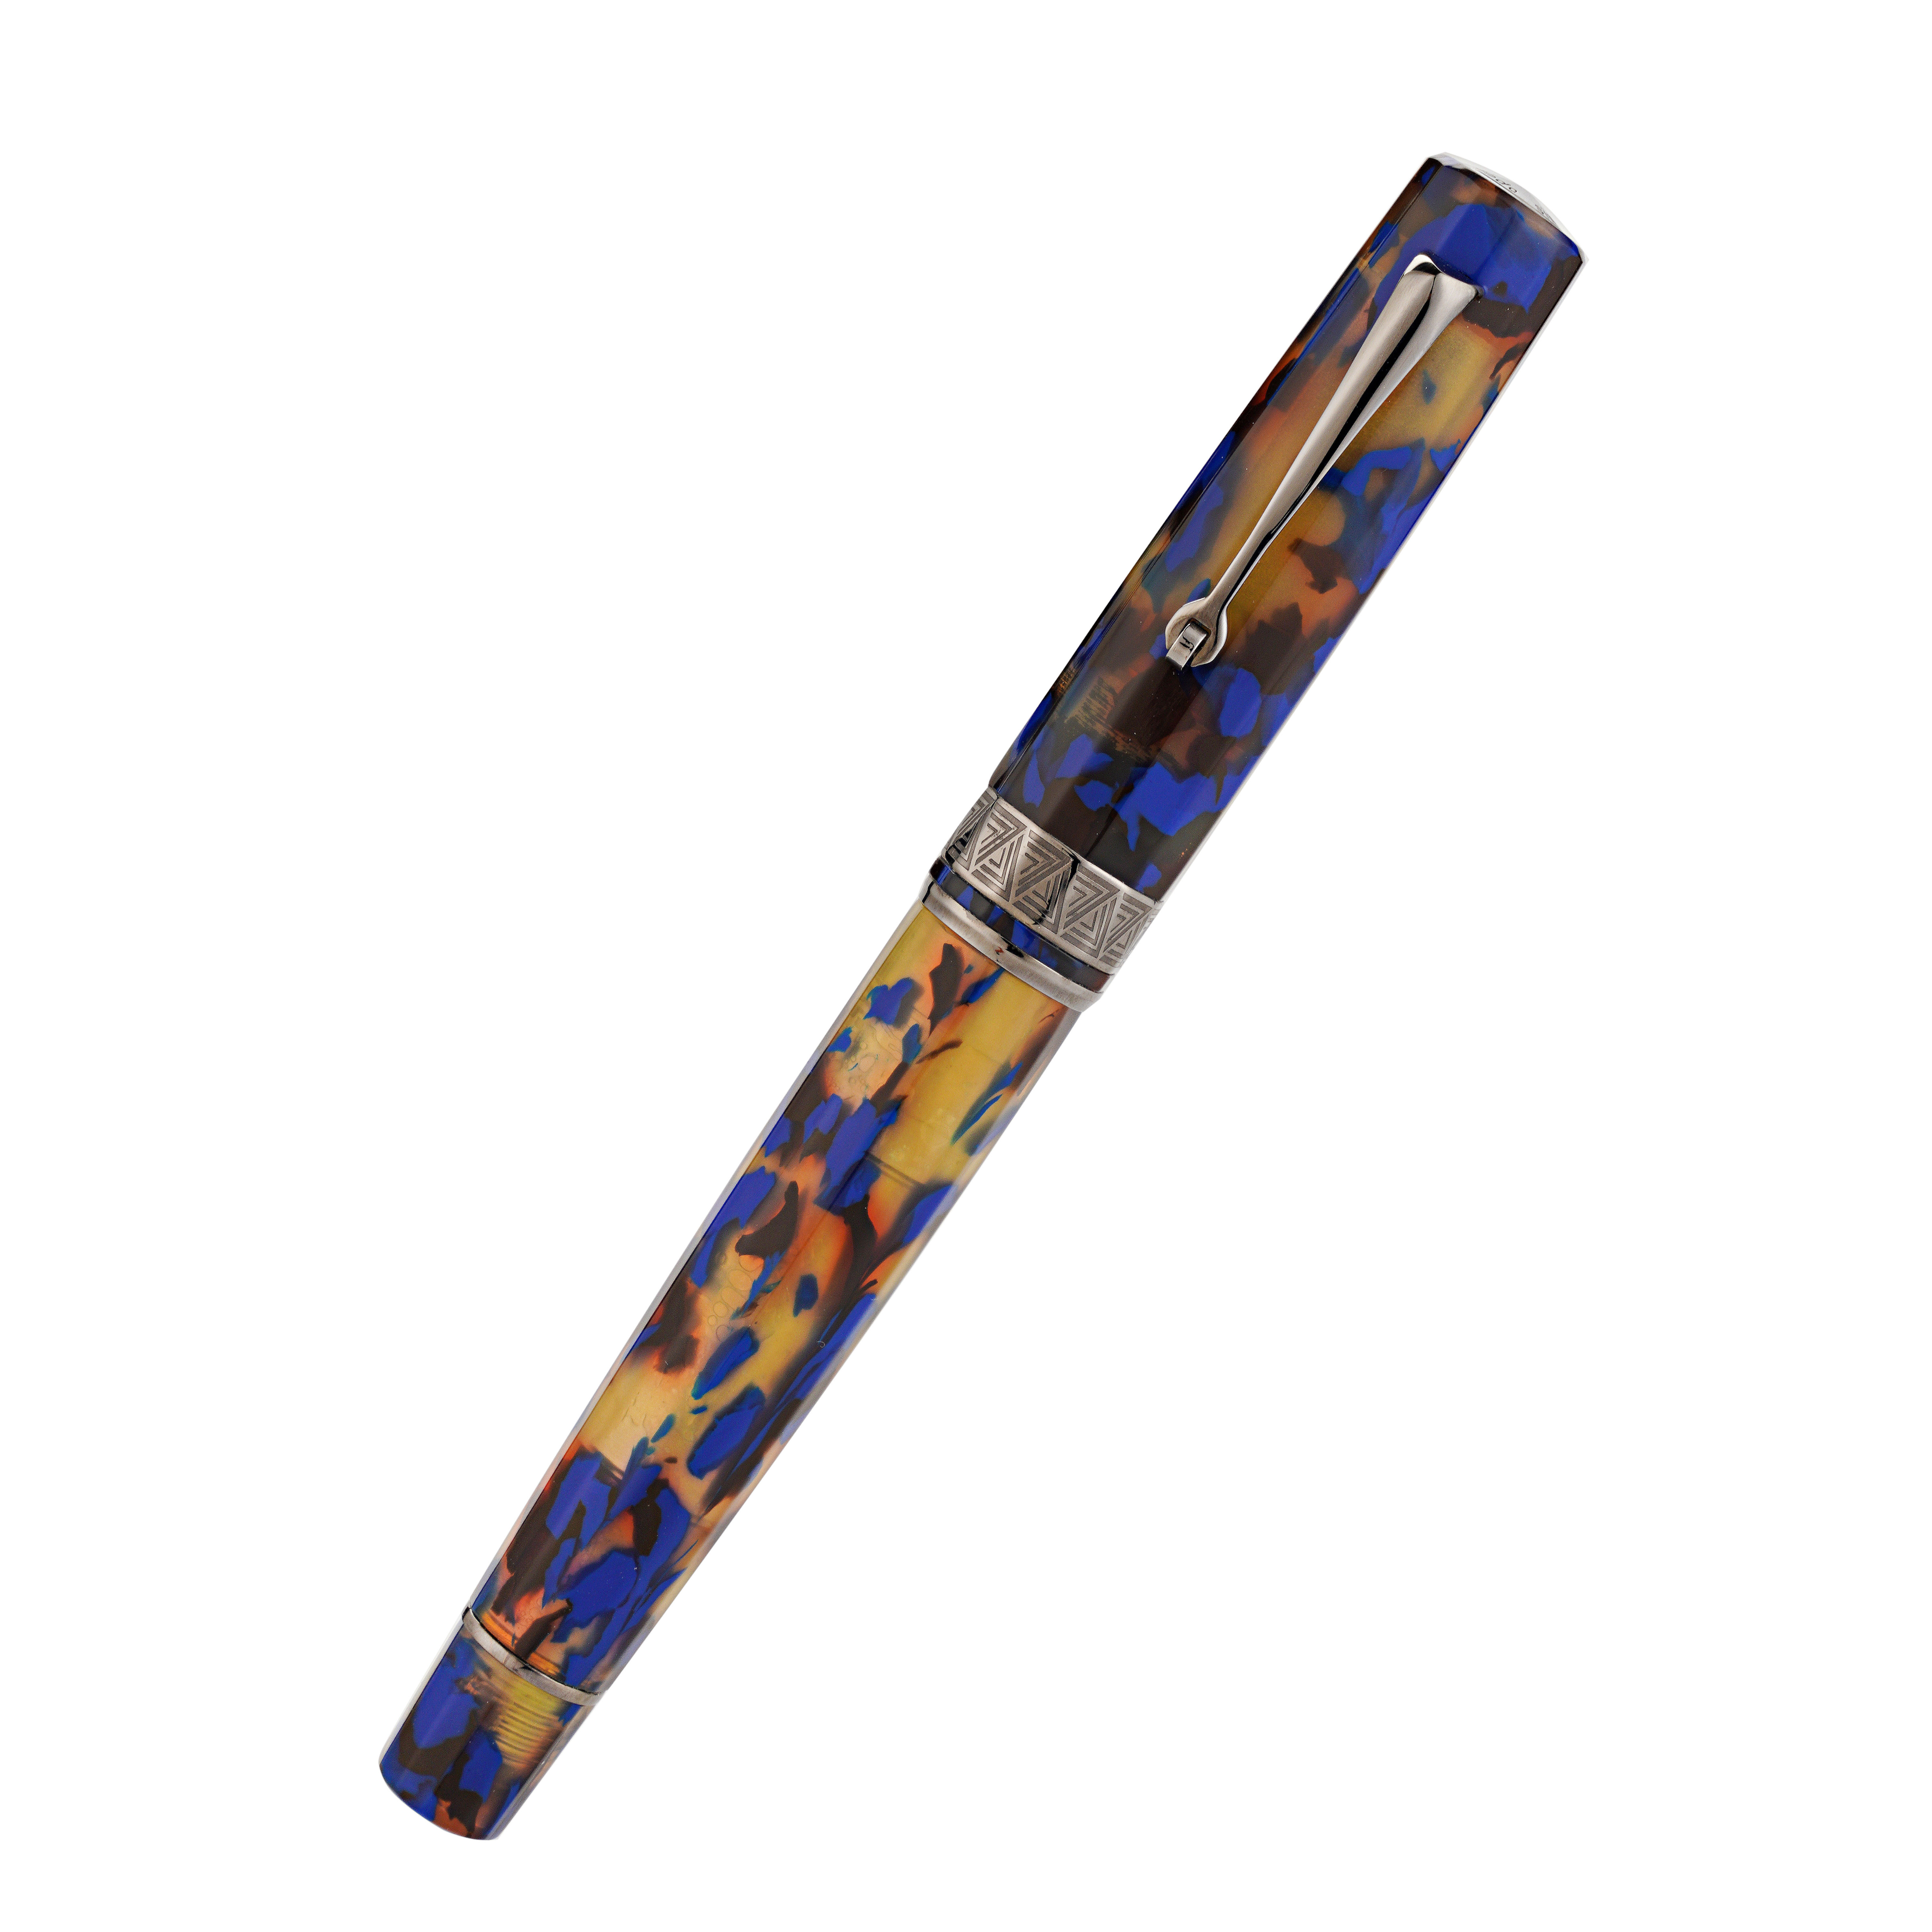 Penna stilografica OMAS Paragon in blu Lucen con finiture nere